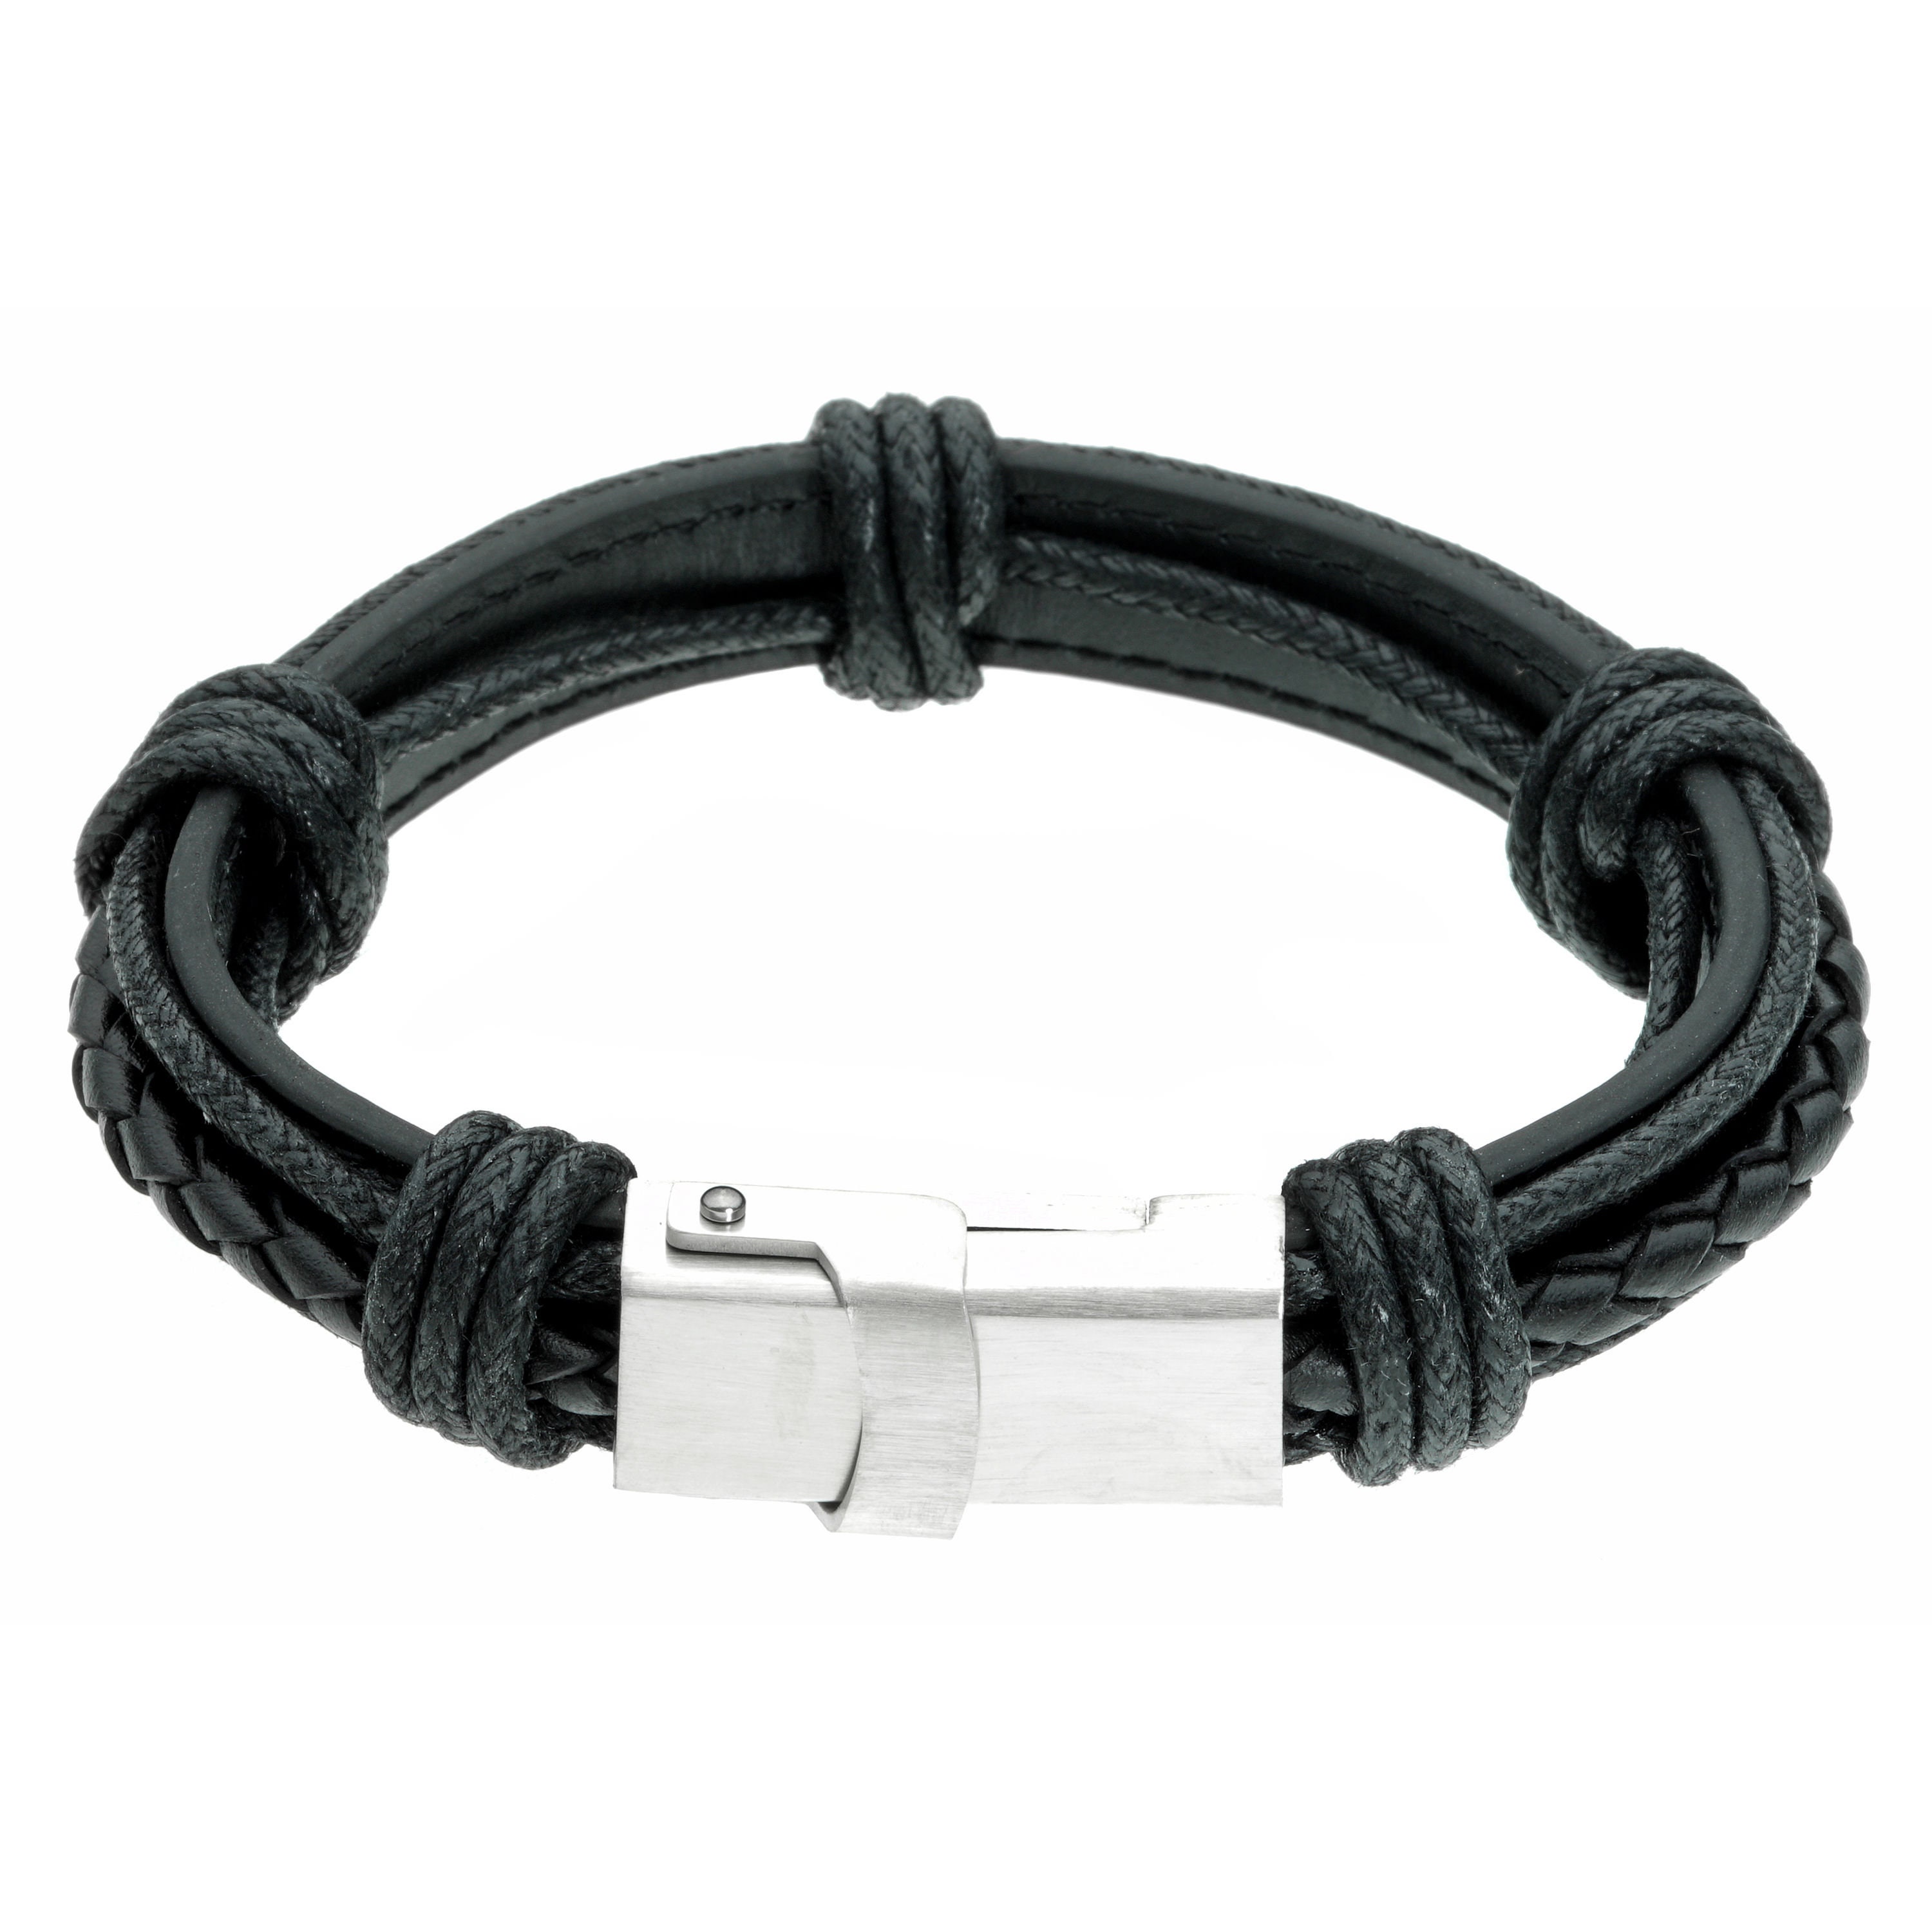 Armilo USB Type C Cable 022 m Portable Bracelet Charger  Armilo   Flipkartcom